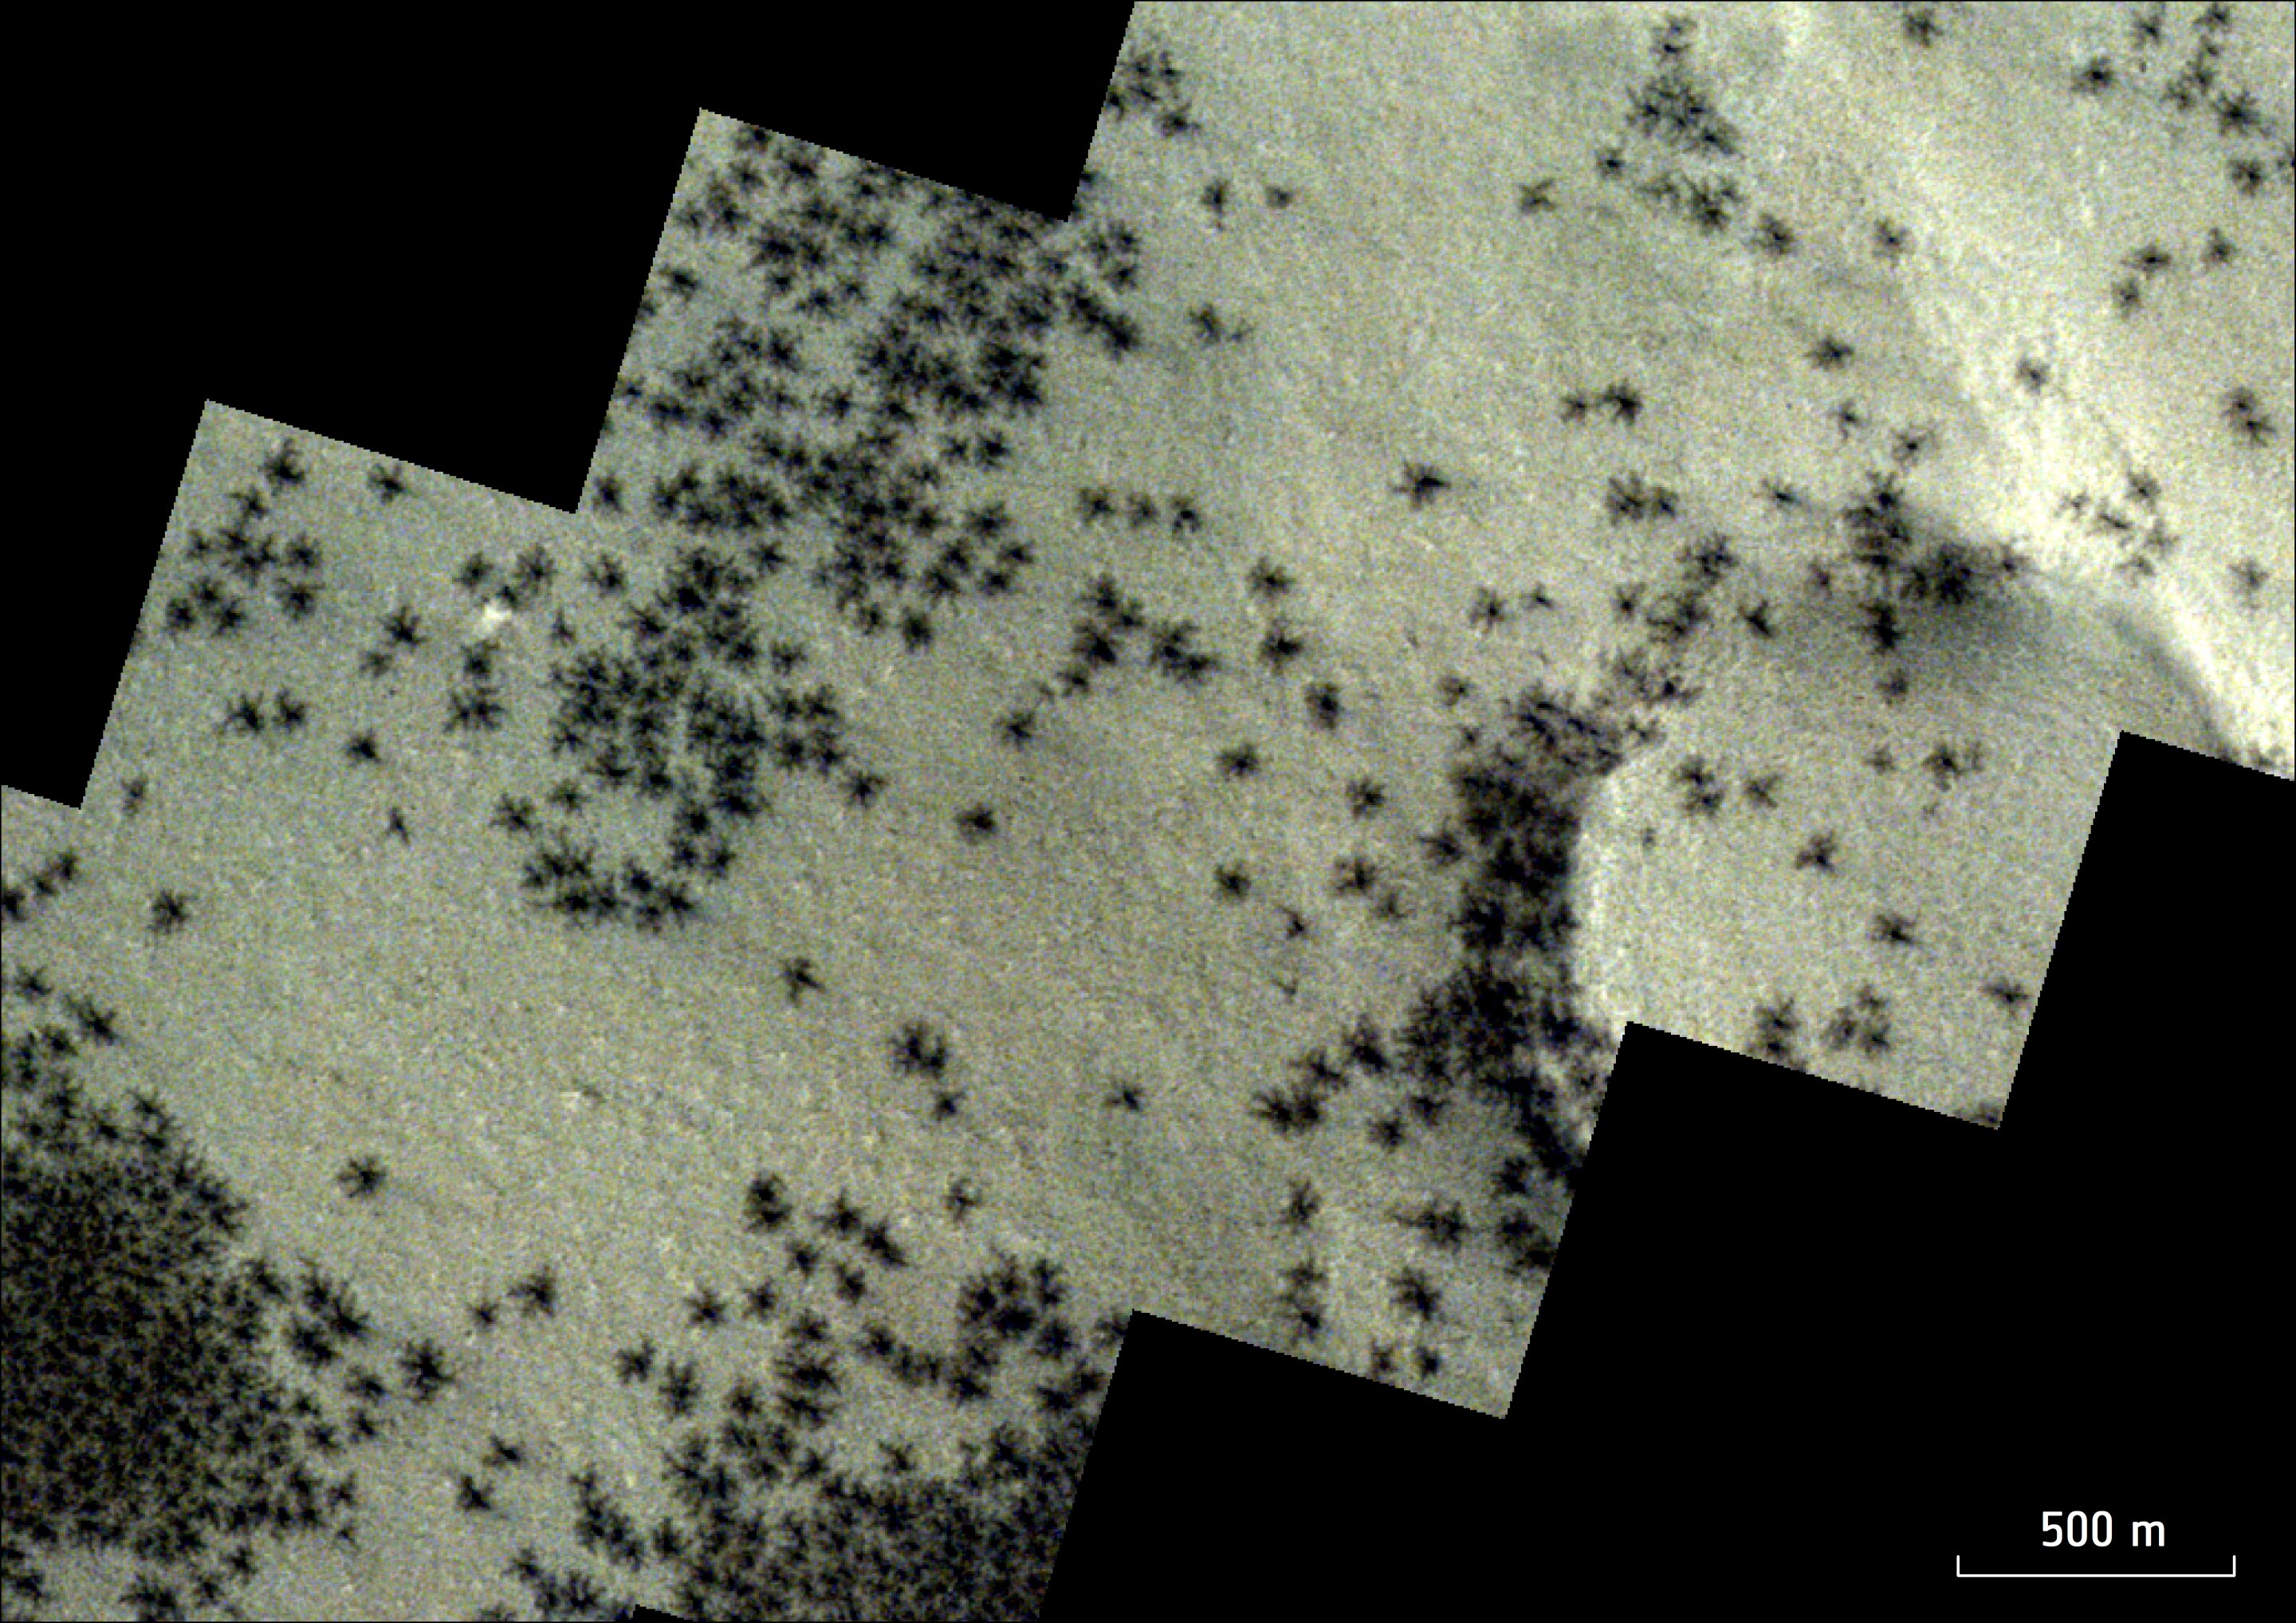 Centenas de 'aranhas' foram capturadas em novas fotos de Marte; veja